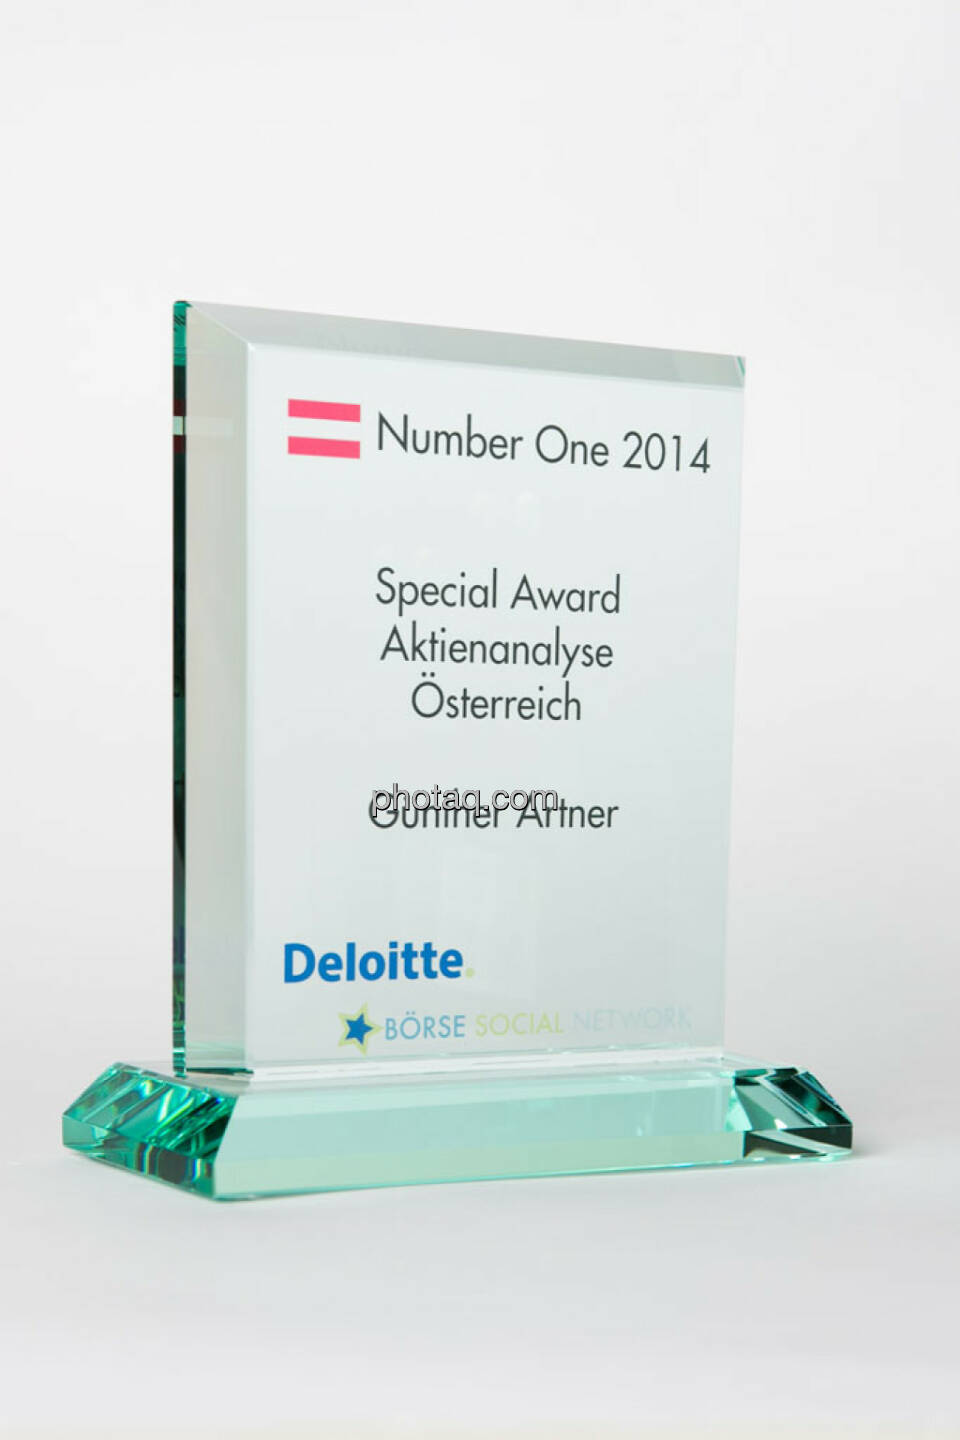 Special Award Aktienanalyse Österreich: Günther Artner